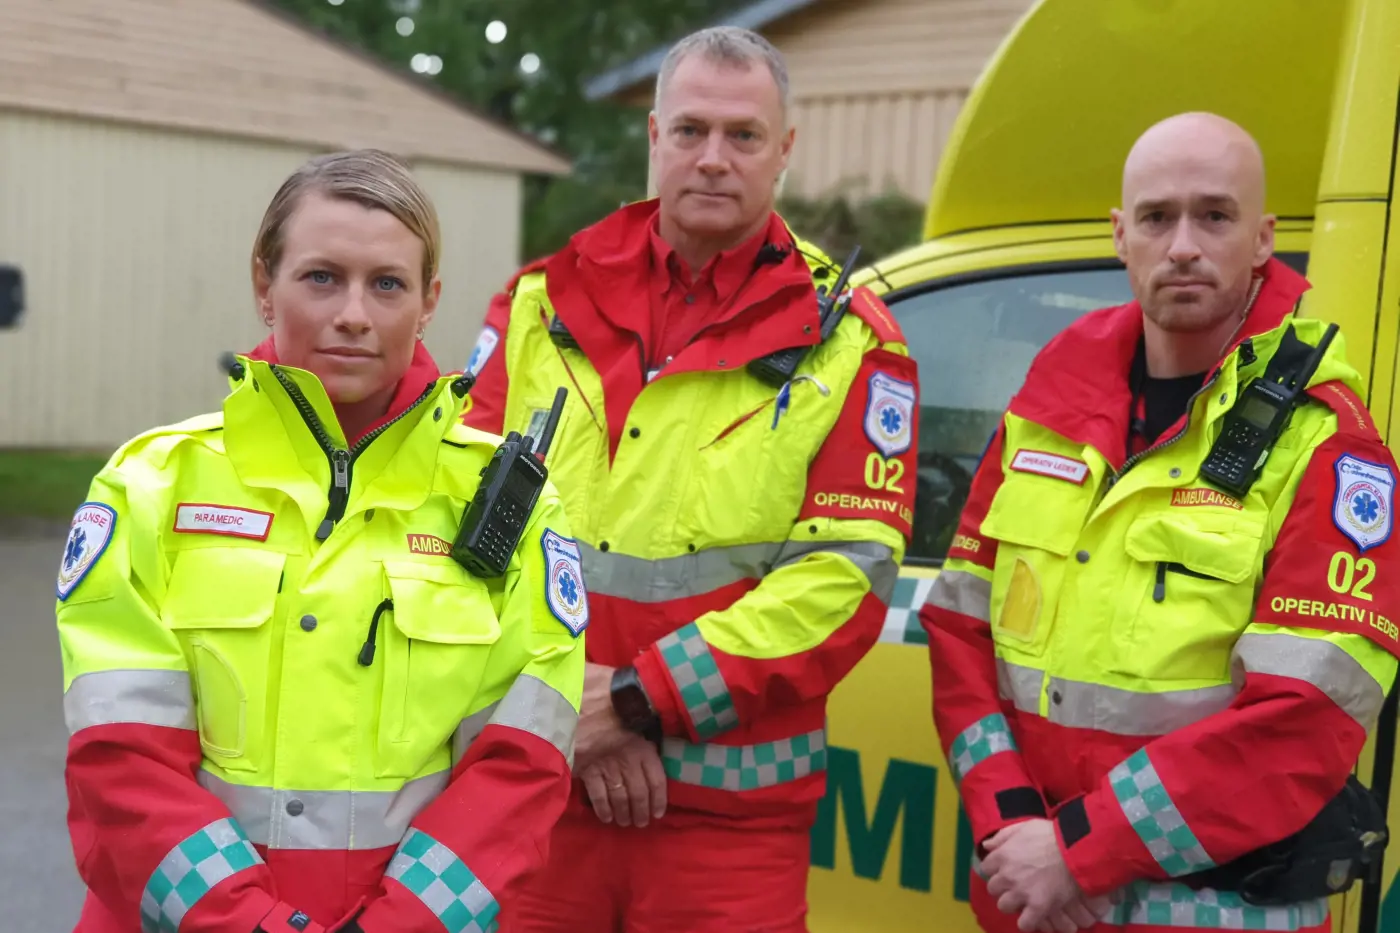 Bilde av paramedic personell, venstre Eva Aarsand, Atle Frøberg og Bjørn Bjelland